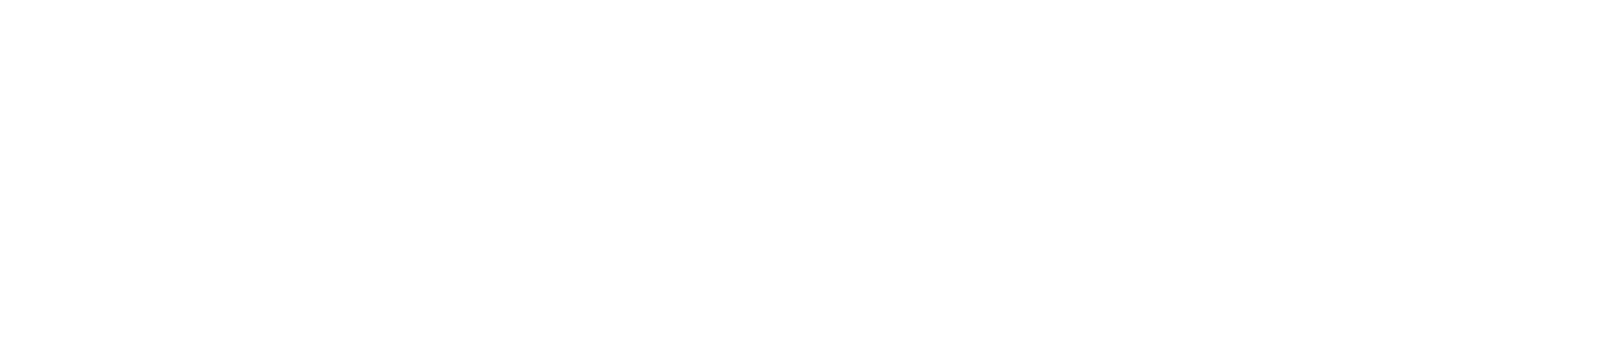 Dr. Reddy's logo grand pour les fonds sombres (PNG transparent)